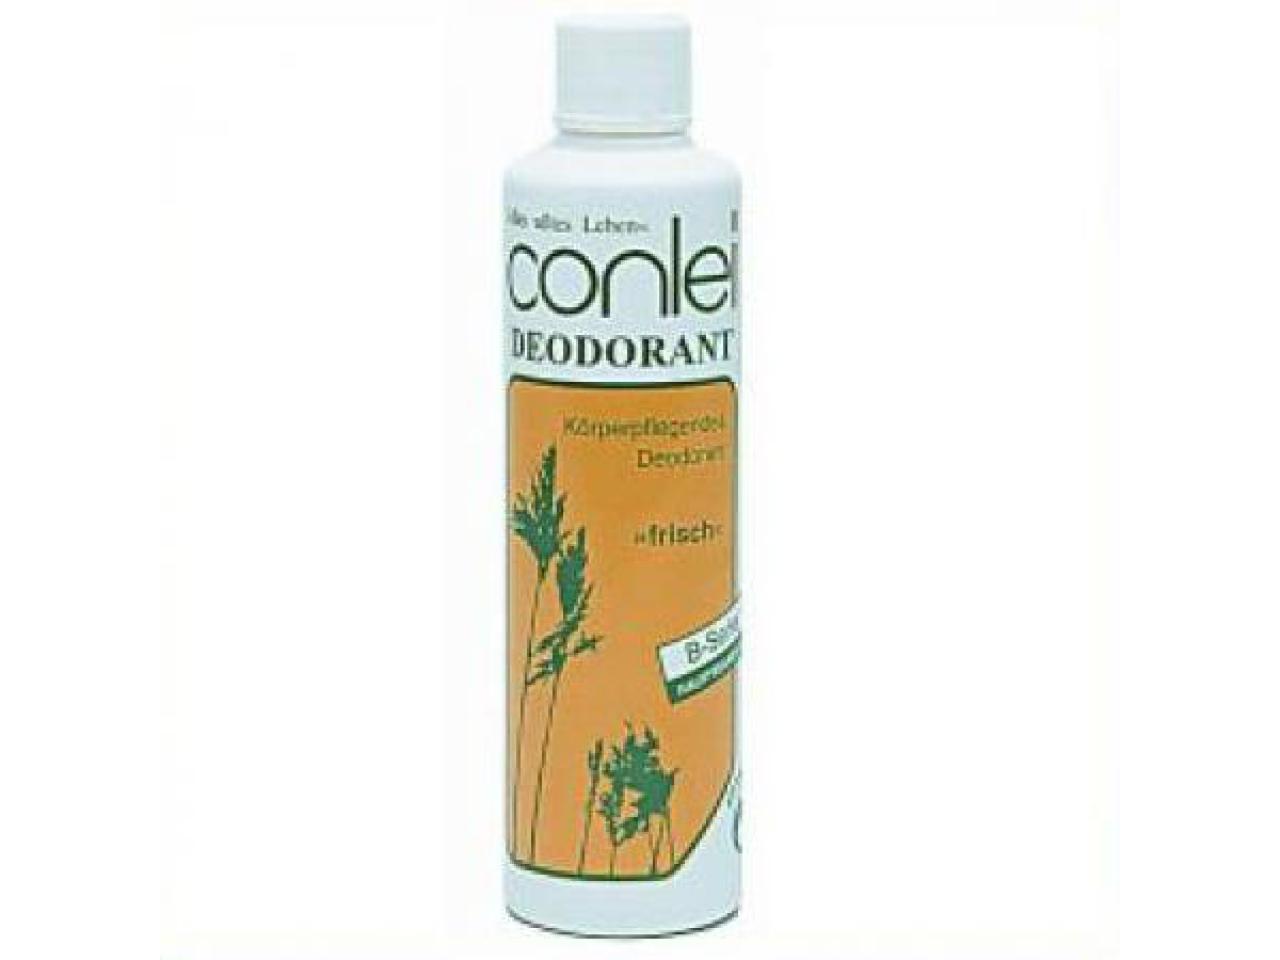 Conlei - Deodorant dezent ohne Zerstäuber 100 ml